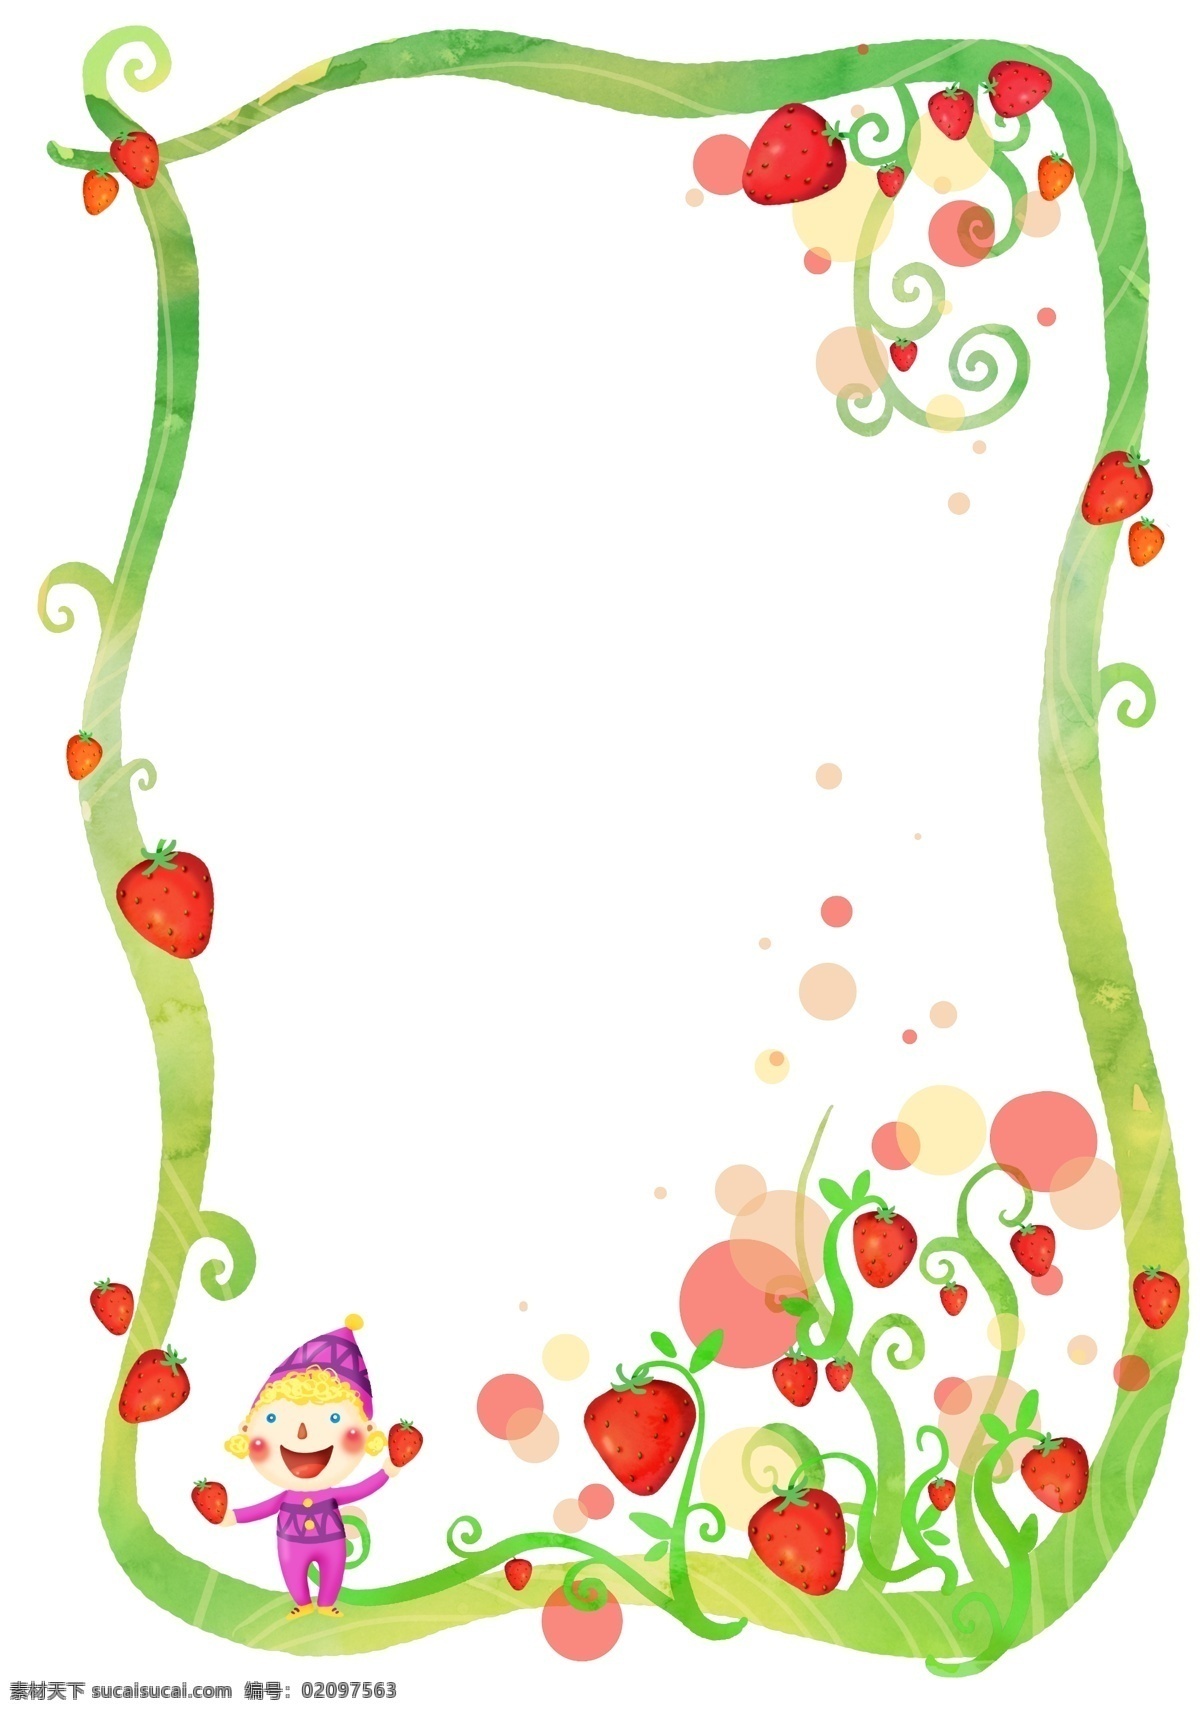 小孩 摘 草莓 花边 框 边框 绿 藤 水果 文字 圈圈 泡泡 清淡 淡粉 水彩 卡通 手绘 插画 韩国 源文件 花纹 白色